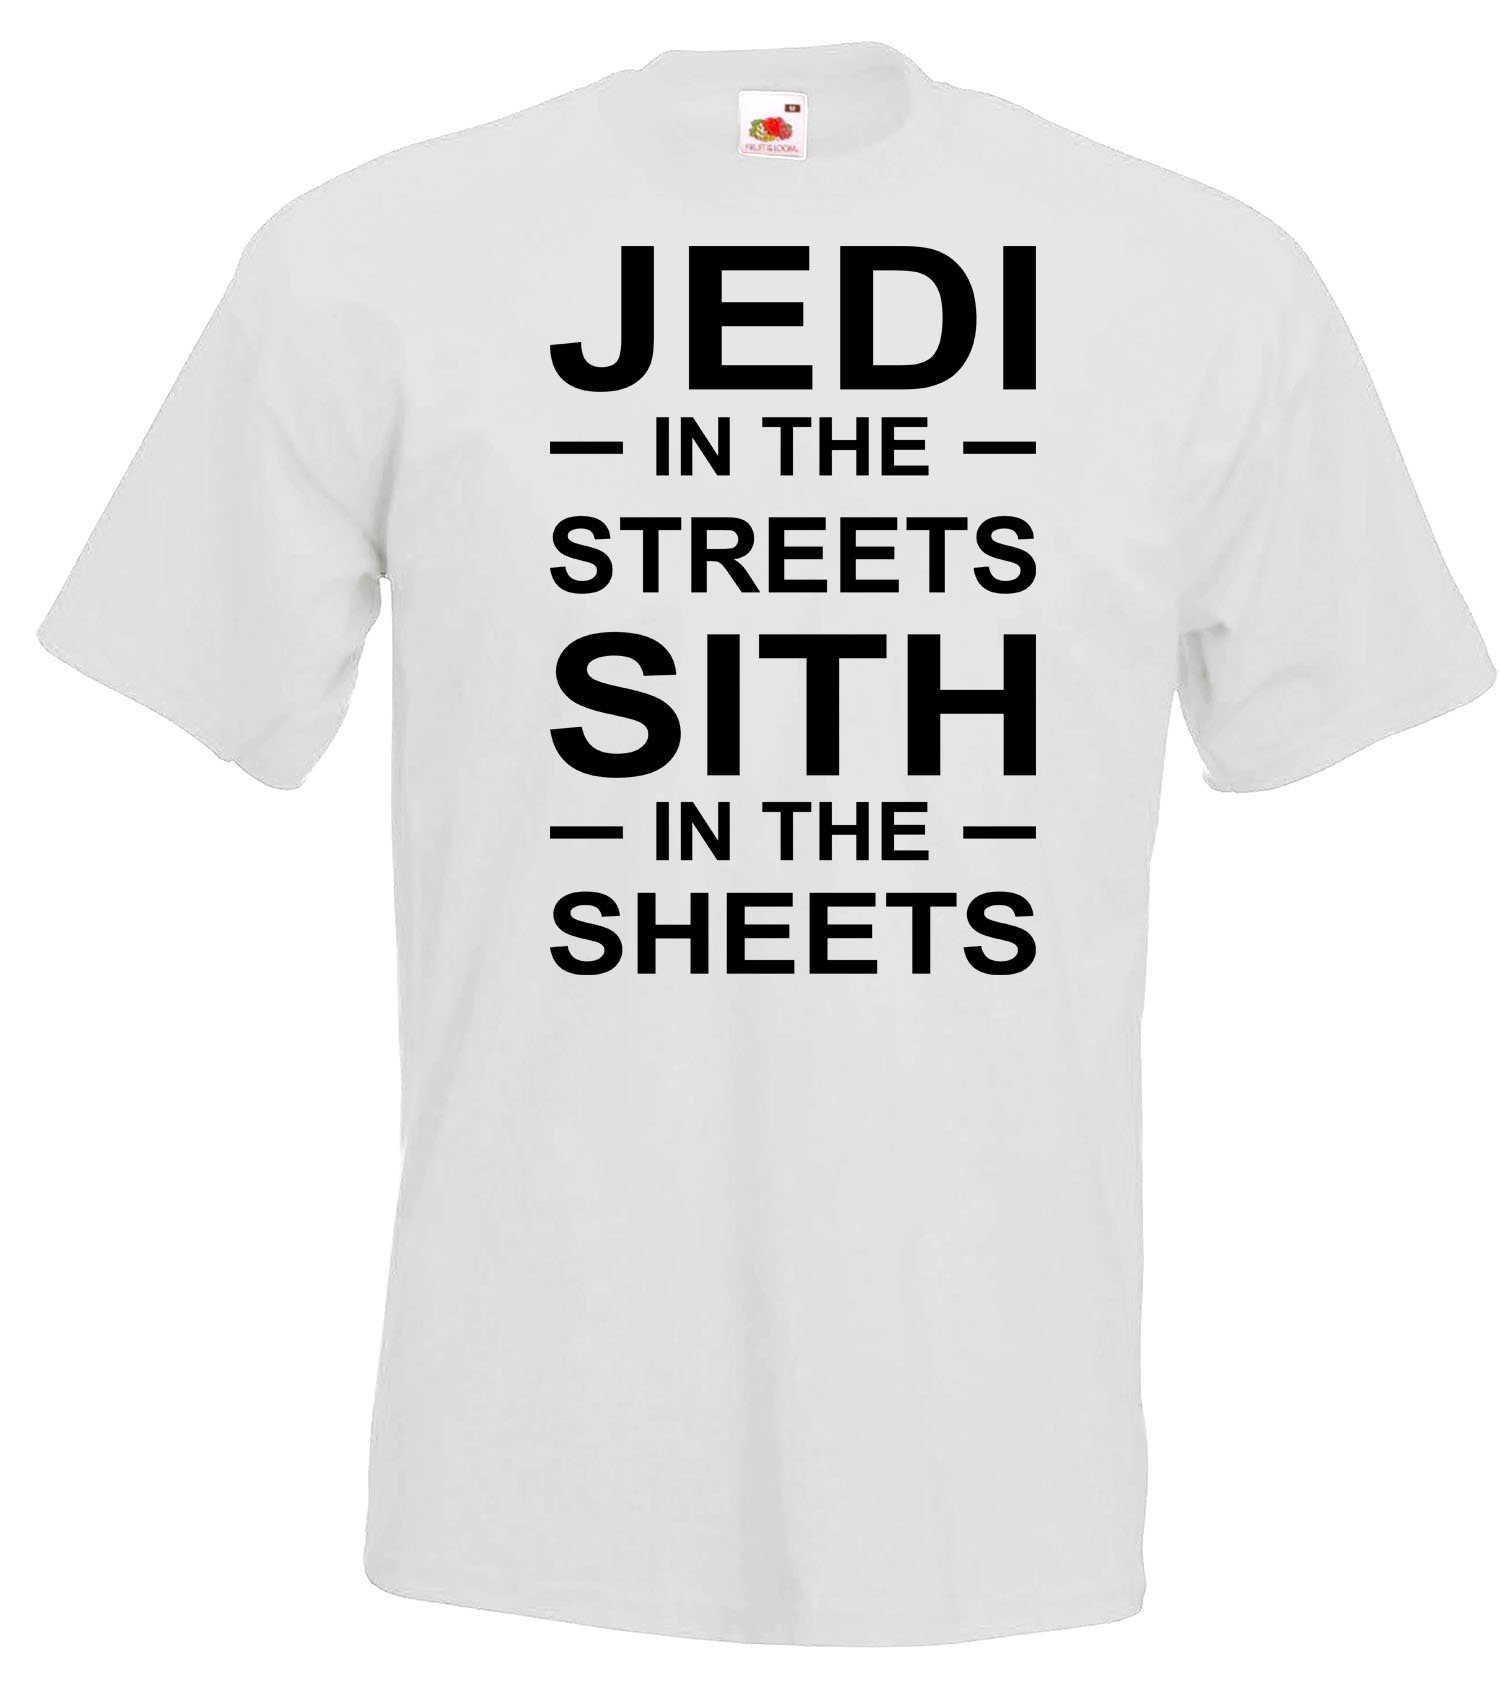 Youth T-Shirt Shirt the Designz mit Serien Jedi Frontprint trendigem Streets in Herren Grau